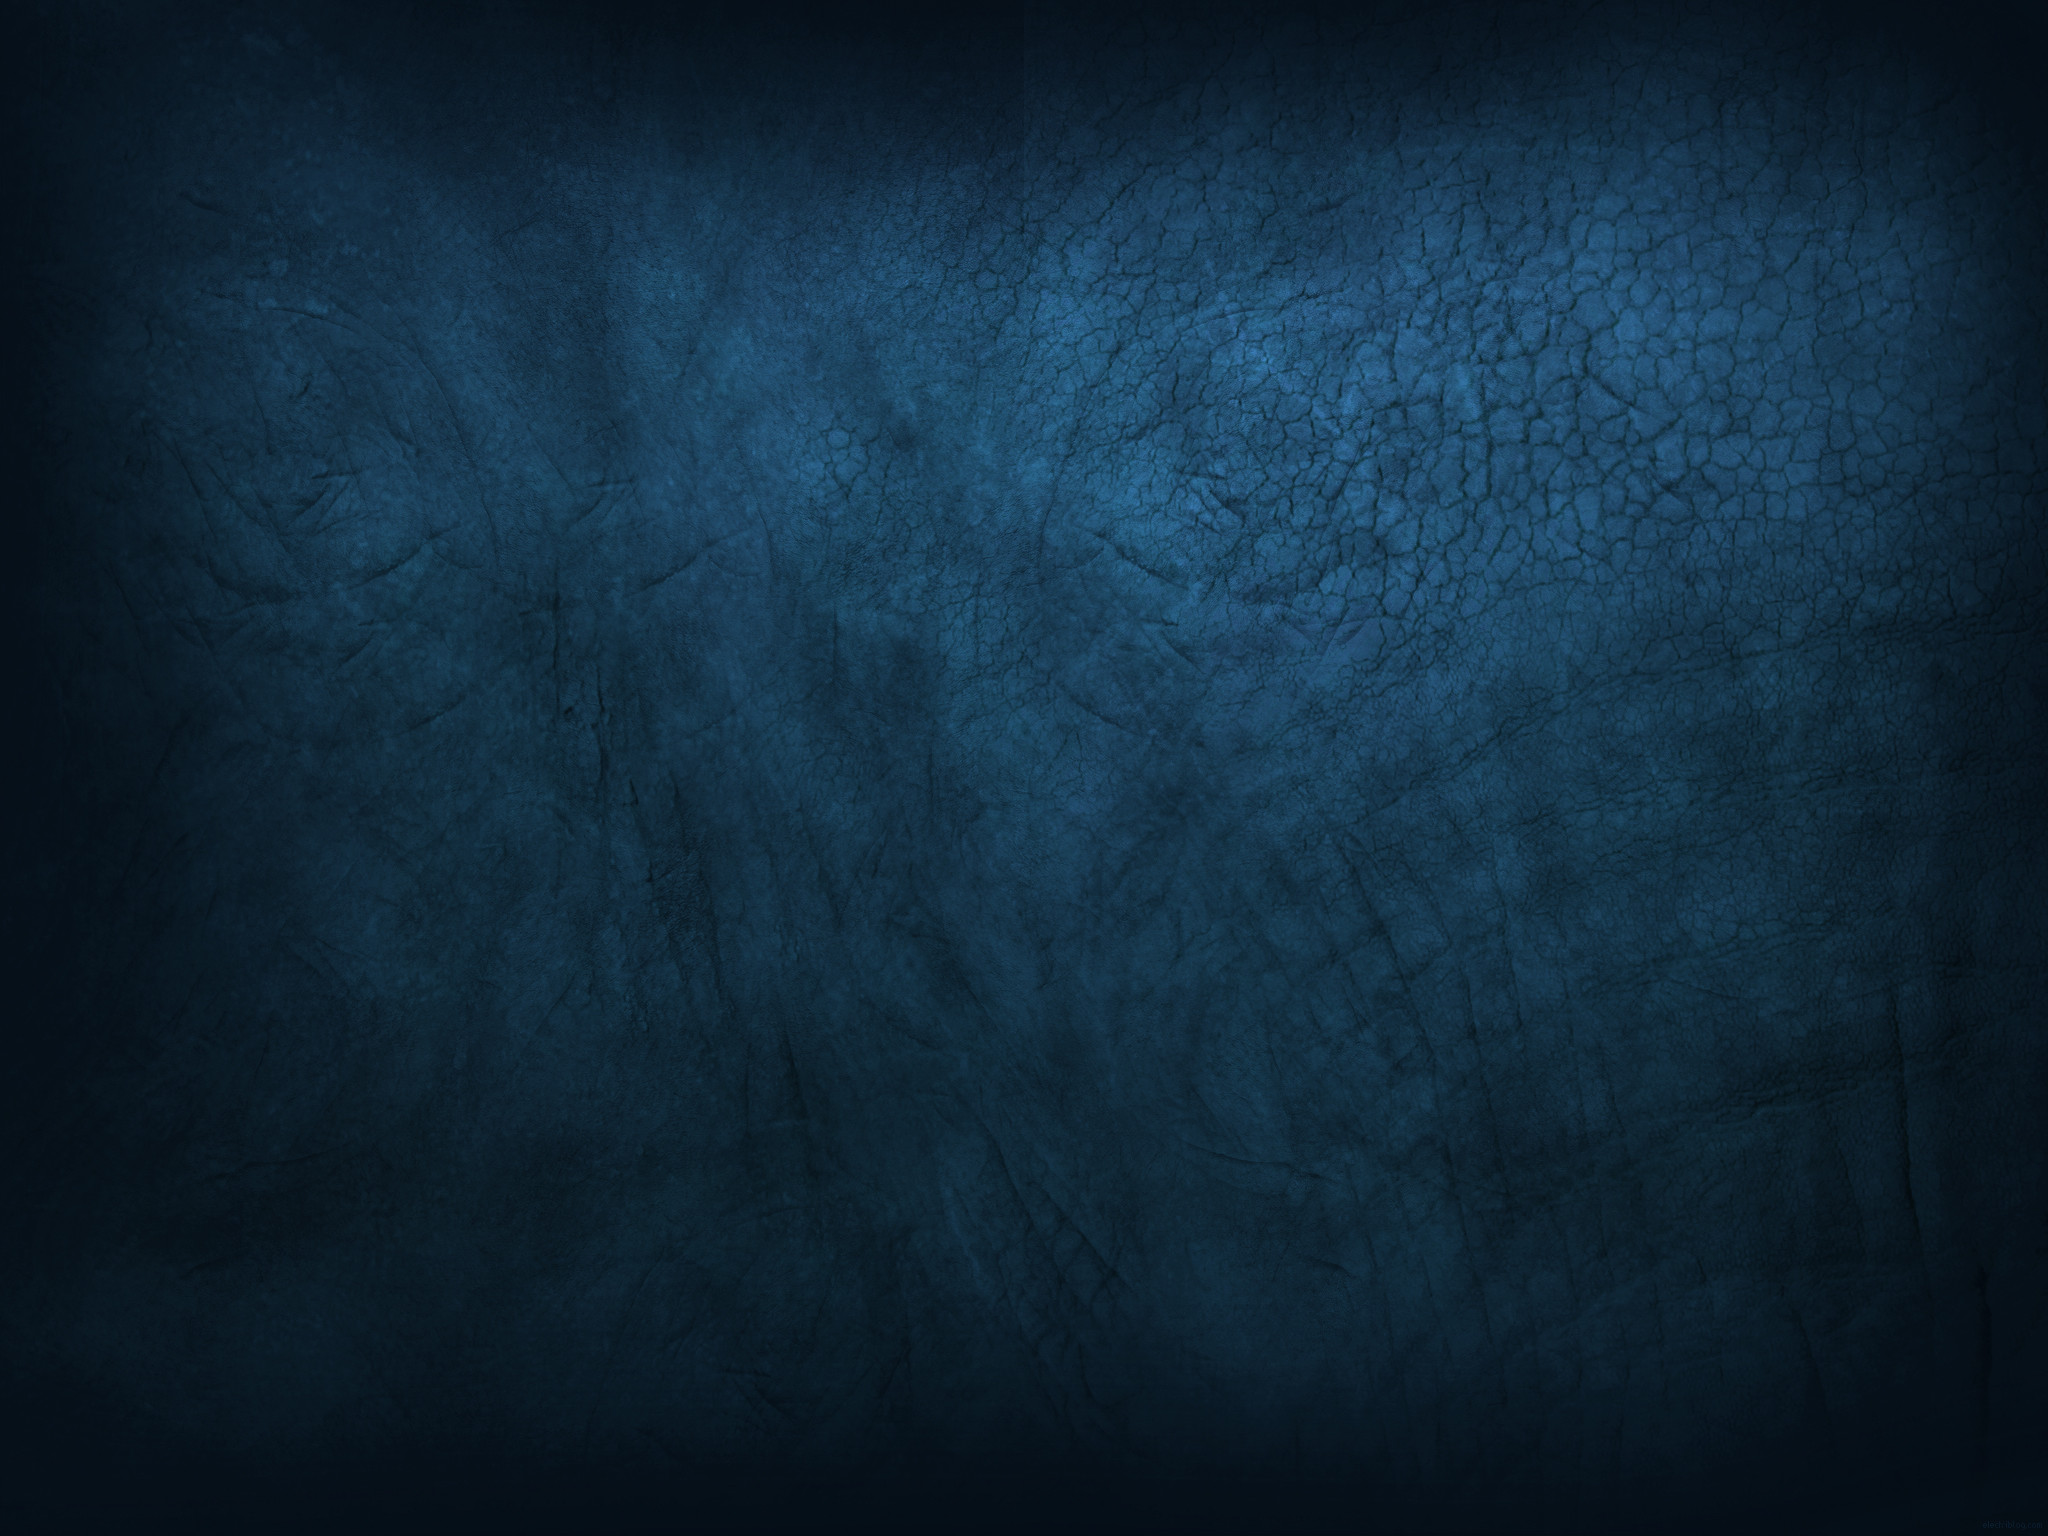 Www - Easy Fans - Com - Photoshop Textures - Pinterest - League Of Legends Blue  Background - 2048x1536 Wallpaper 